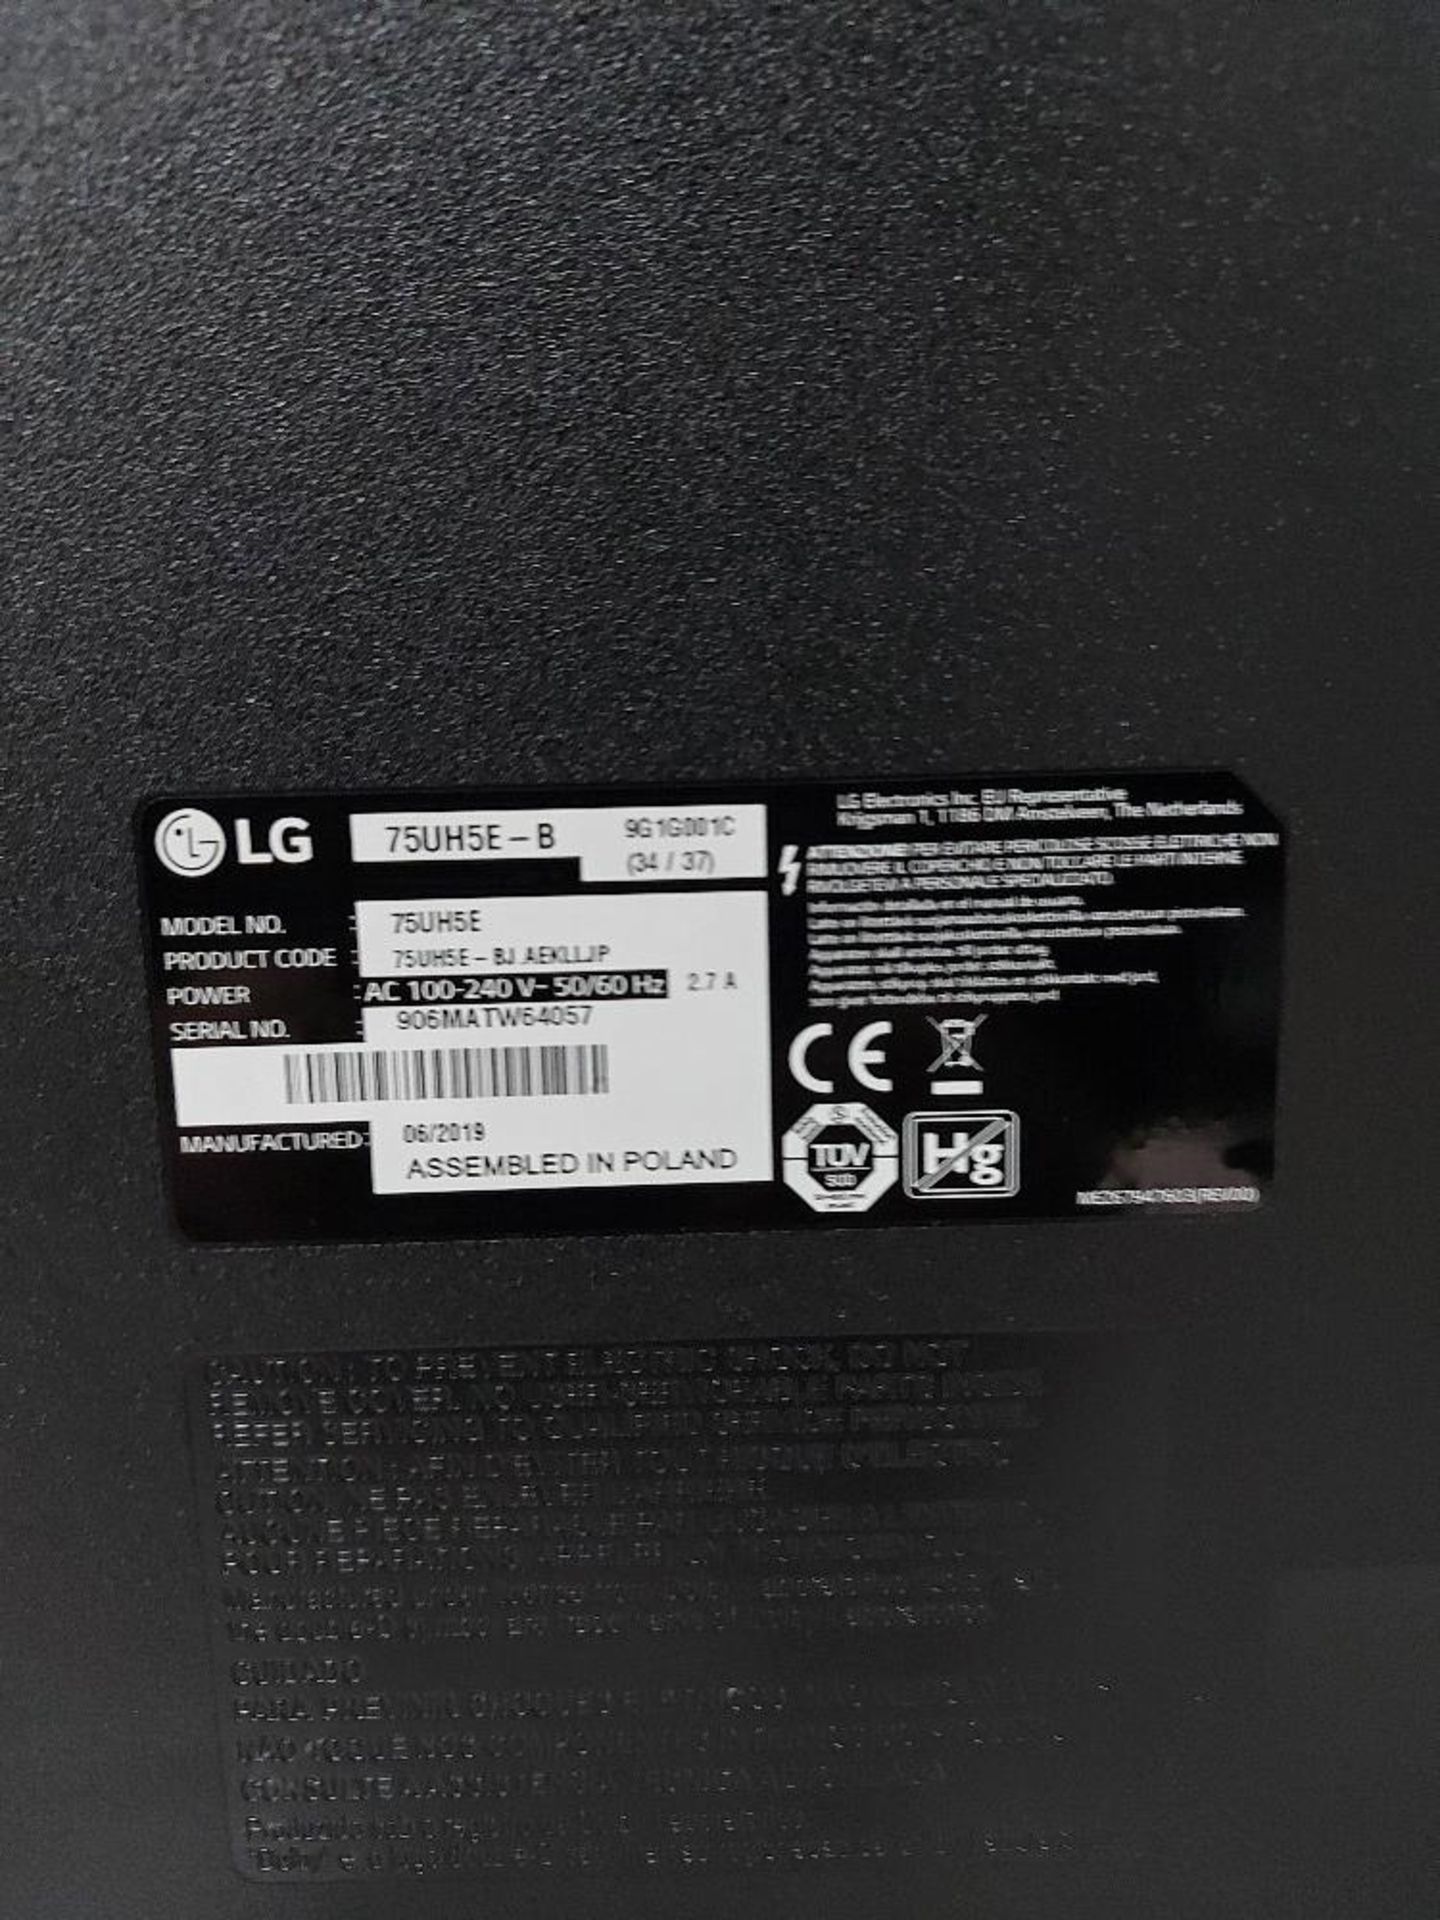 LG 75UH5E-B 75'' Display - Image 4 of 6